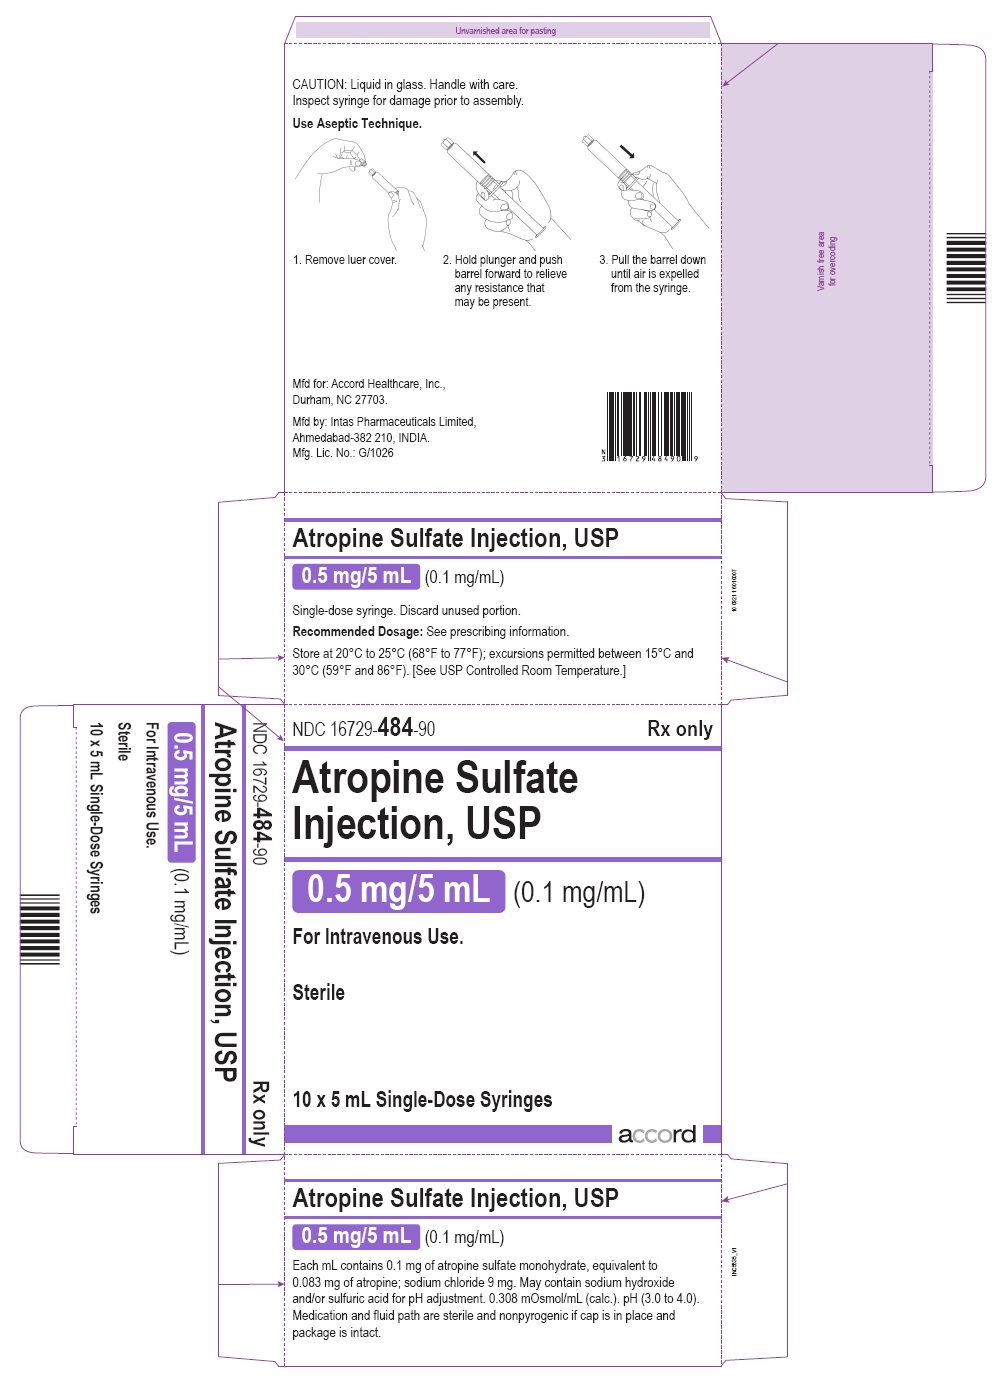 PRINCIPAL DISPLAY PANEL - 10 x 5 mL Syringe Carton